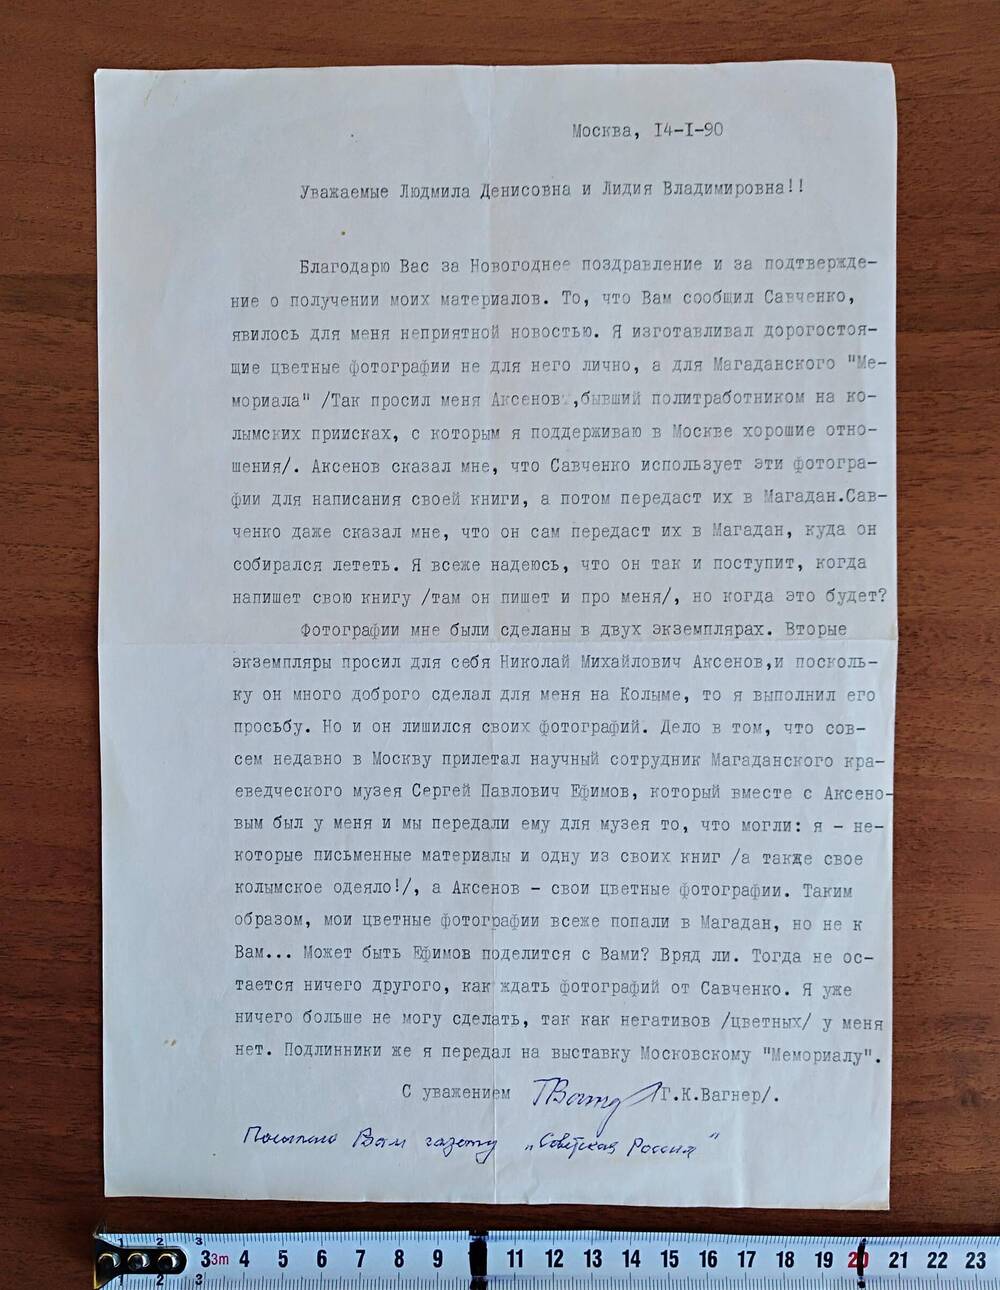 Письмо Вагнера Г.К. Людмиле Денисовне и Лидии Владимировне, с подписью автора письма